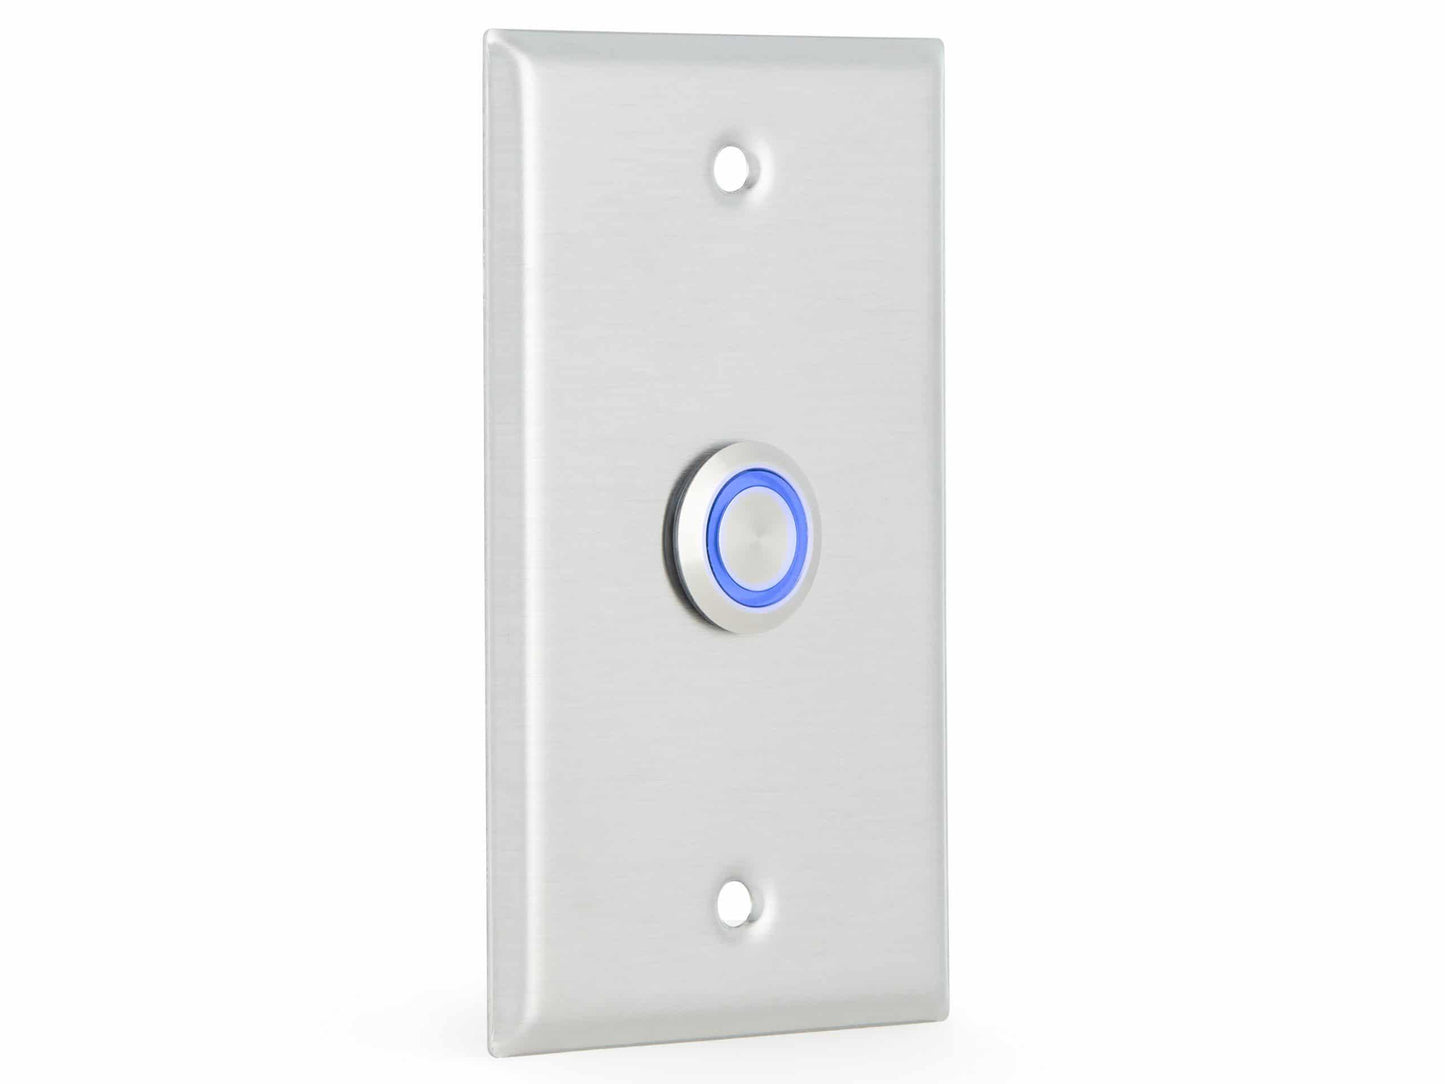 Algo 1203 Call Switch w/ Blue LED Light - ALGO-1203 - New - ALGO-1203 - Reef Telecom